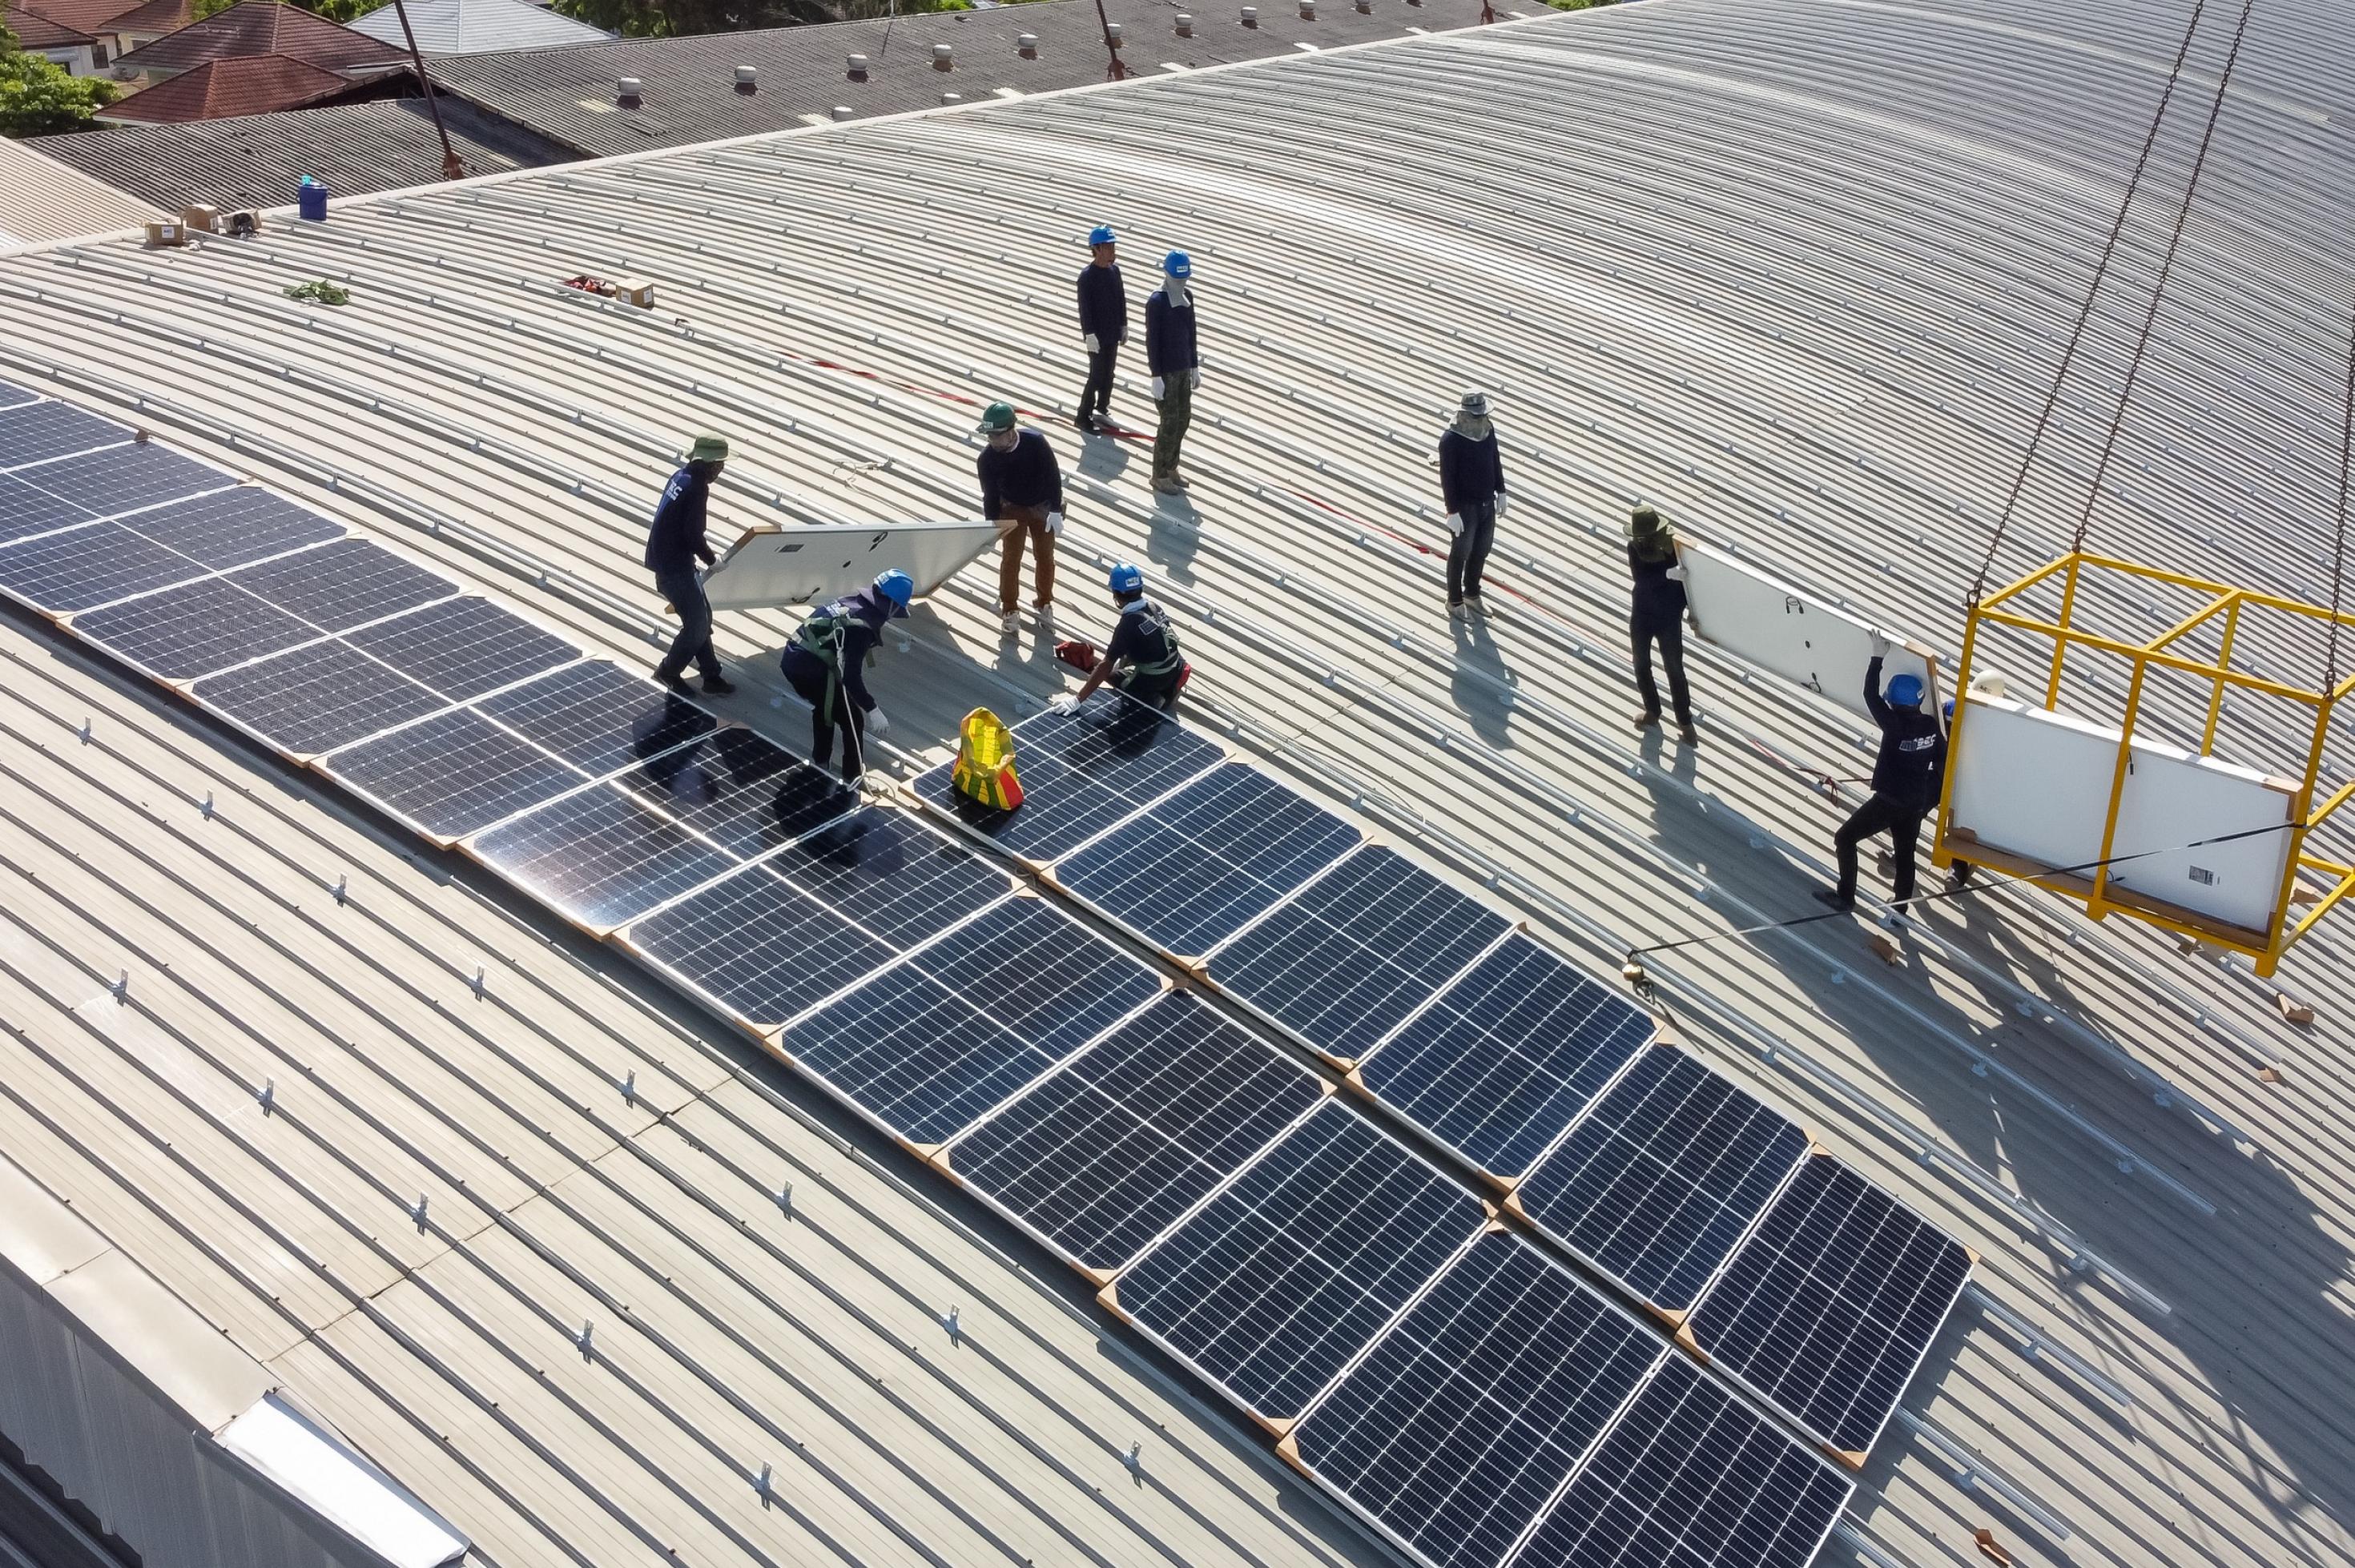 Installateure auf dem Dach einer Fabrik installieren Solarpanele.